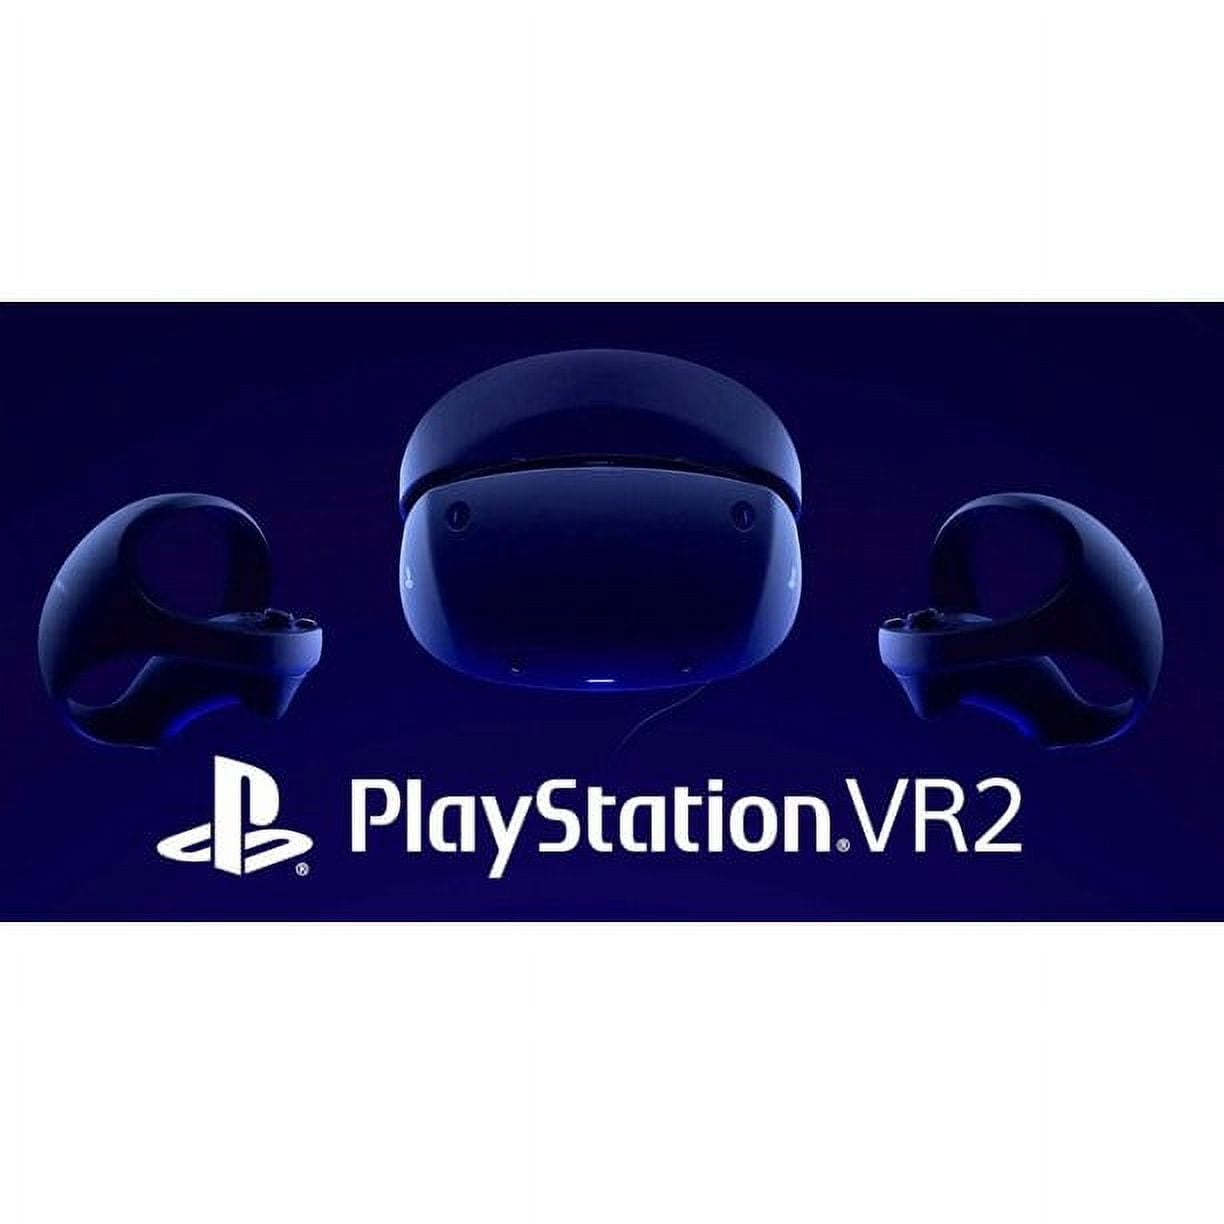 16th March 2023 - PlayStation 5 + VR2 Bundle